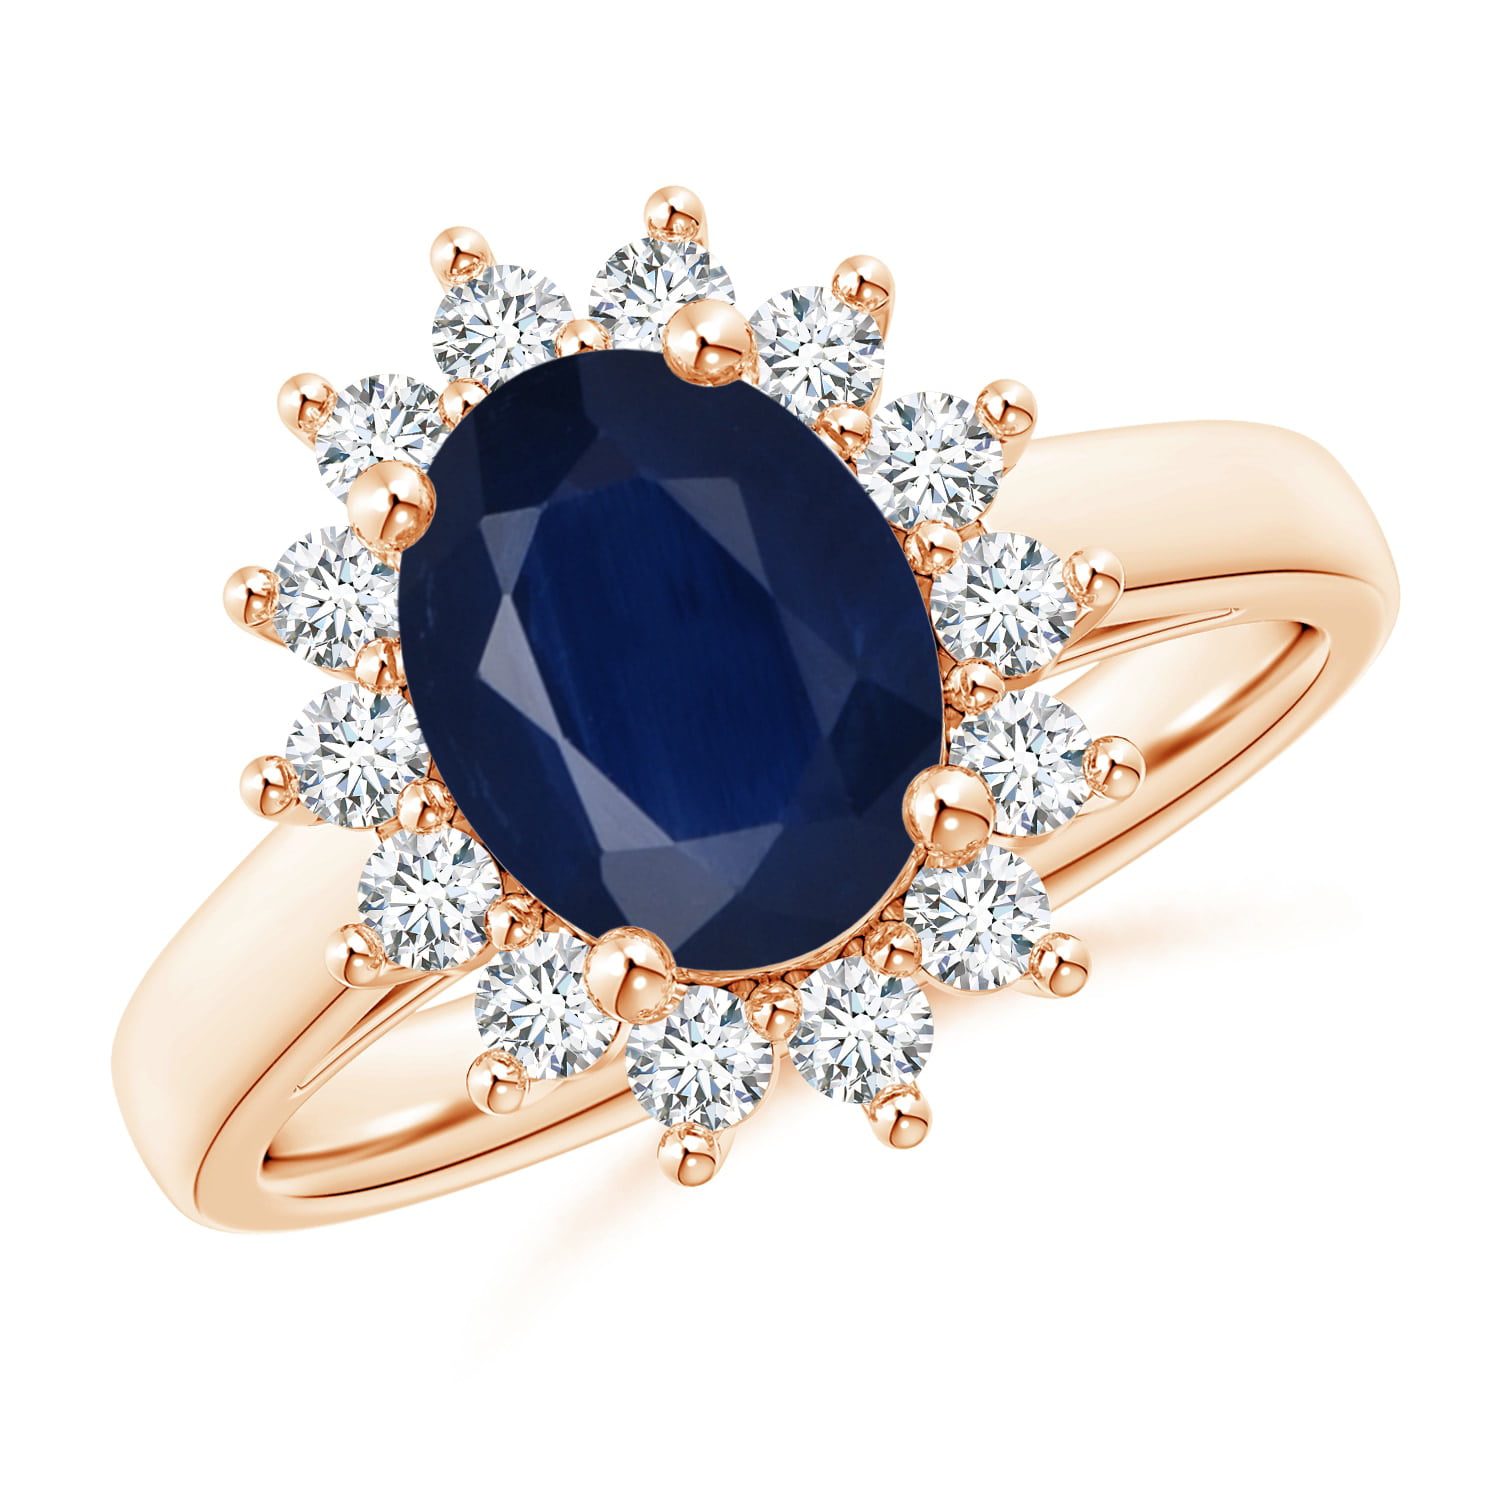 Natural Blue Sapphire 14K Solid Gold Moissanite Diamond RingEngagement Ring For WomenSeptember Birthstone RingGift For Her